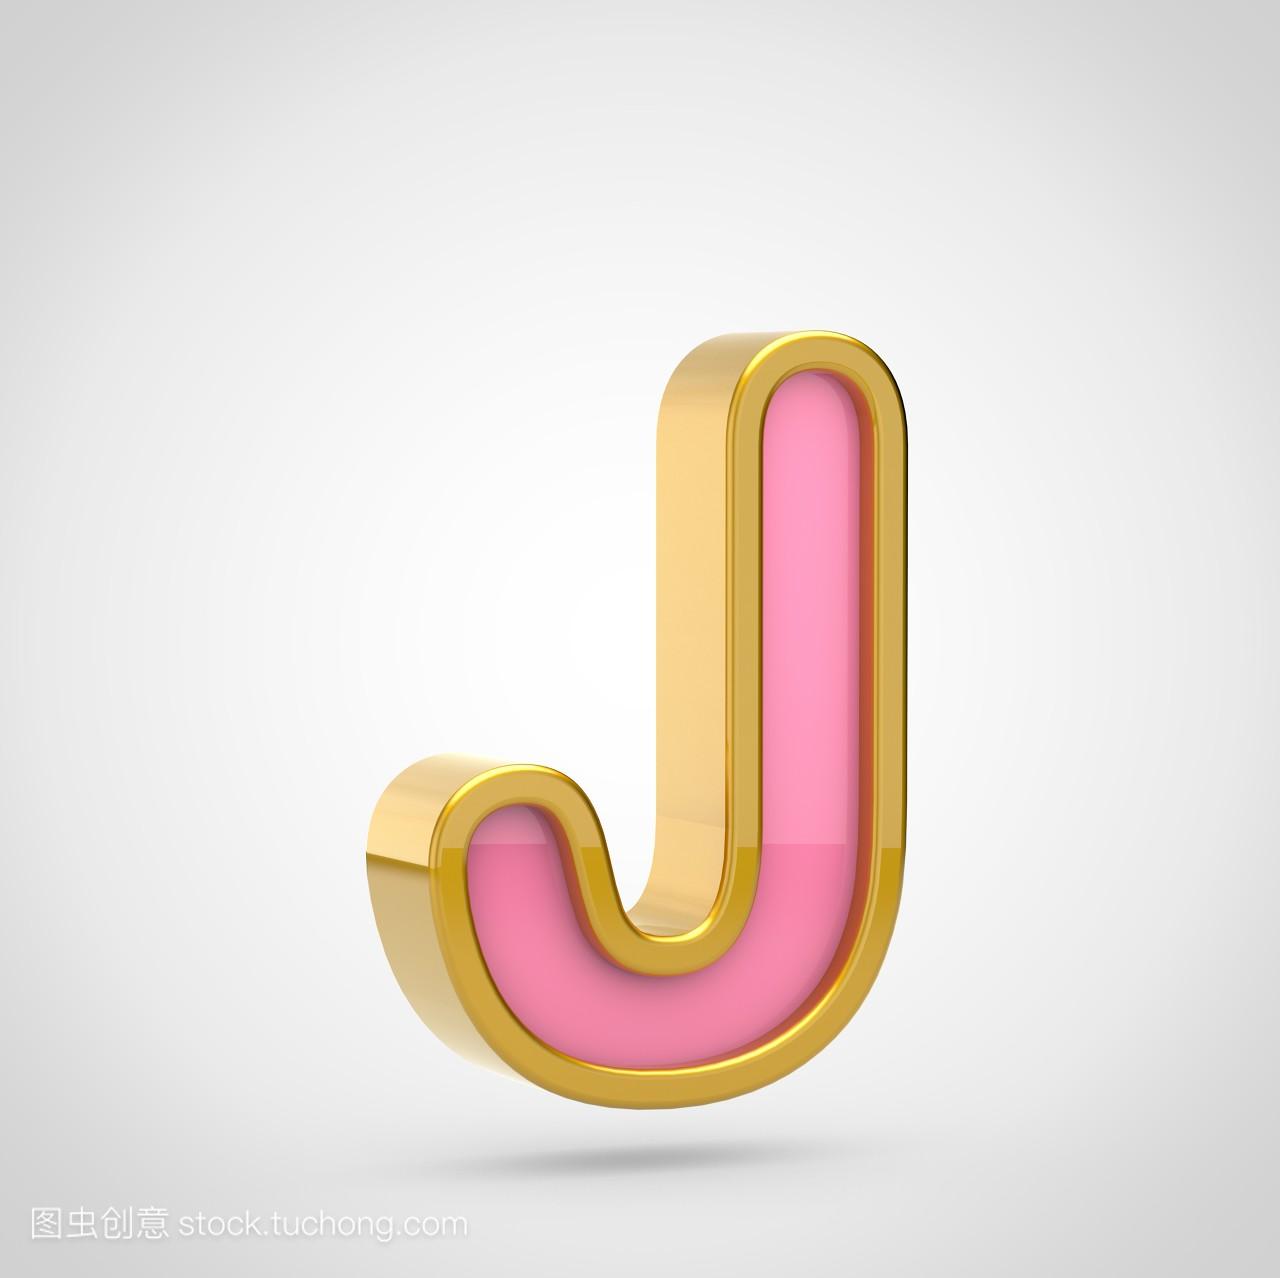 粉红色字体, 金色轮廓白色背景, 大写字母 J